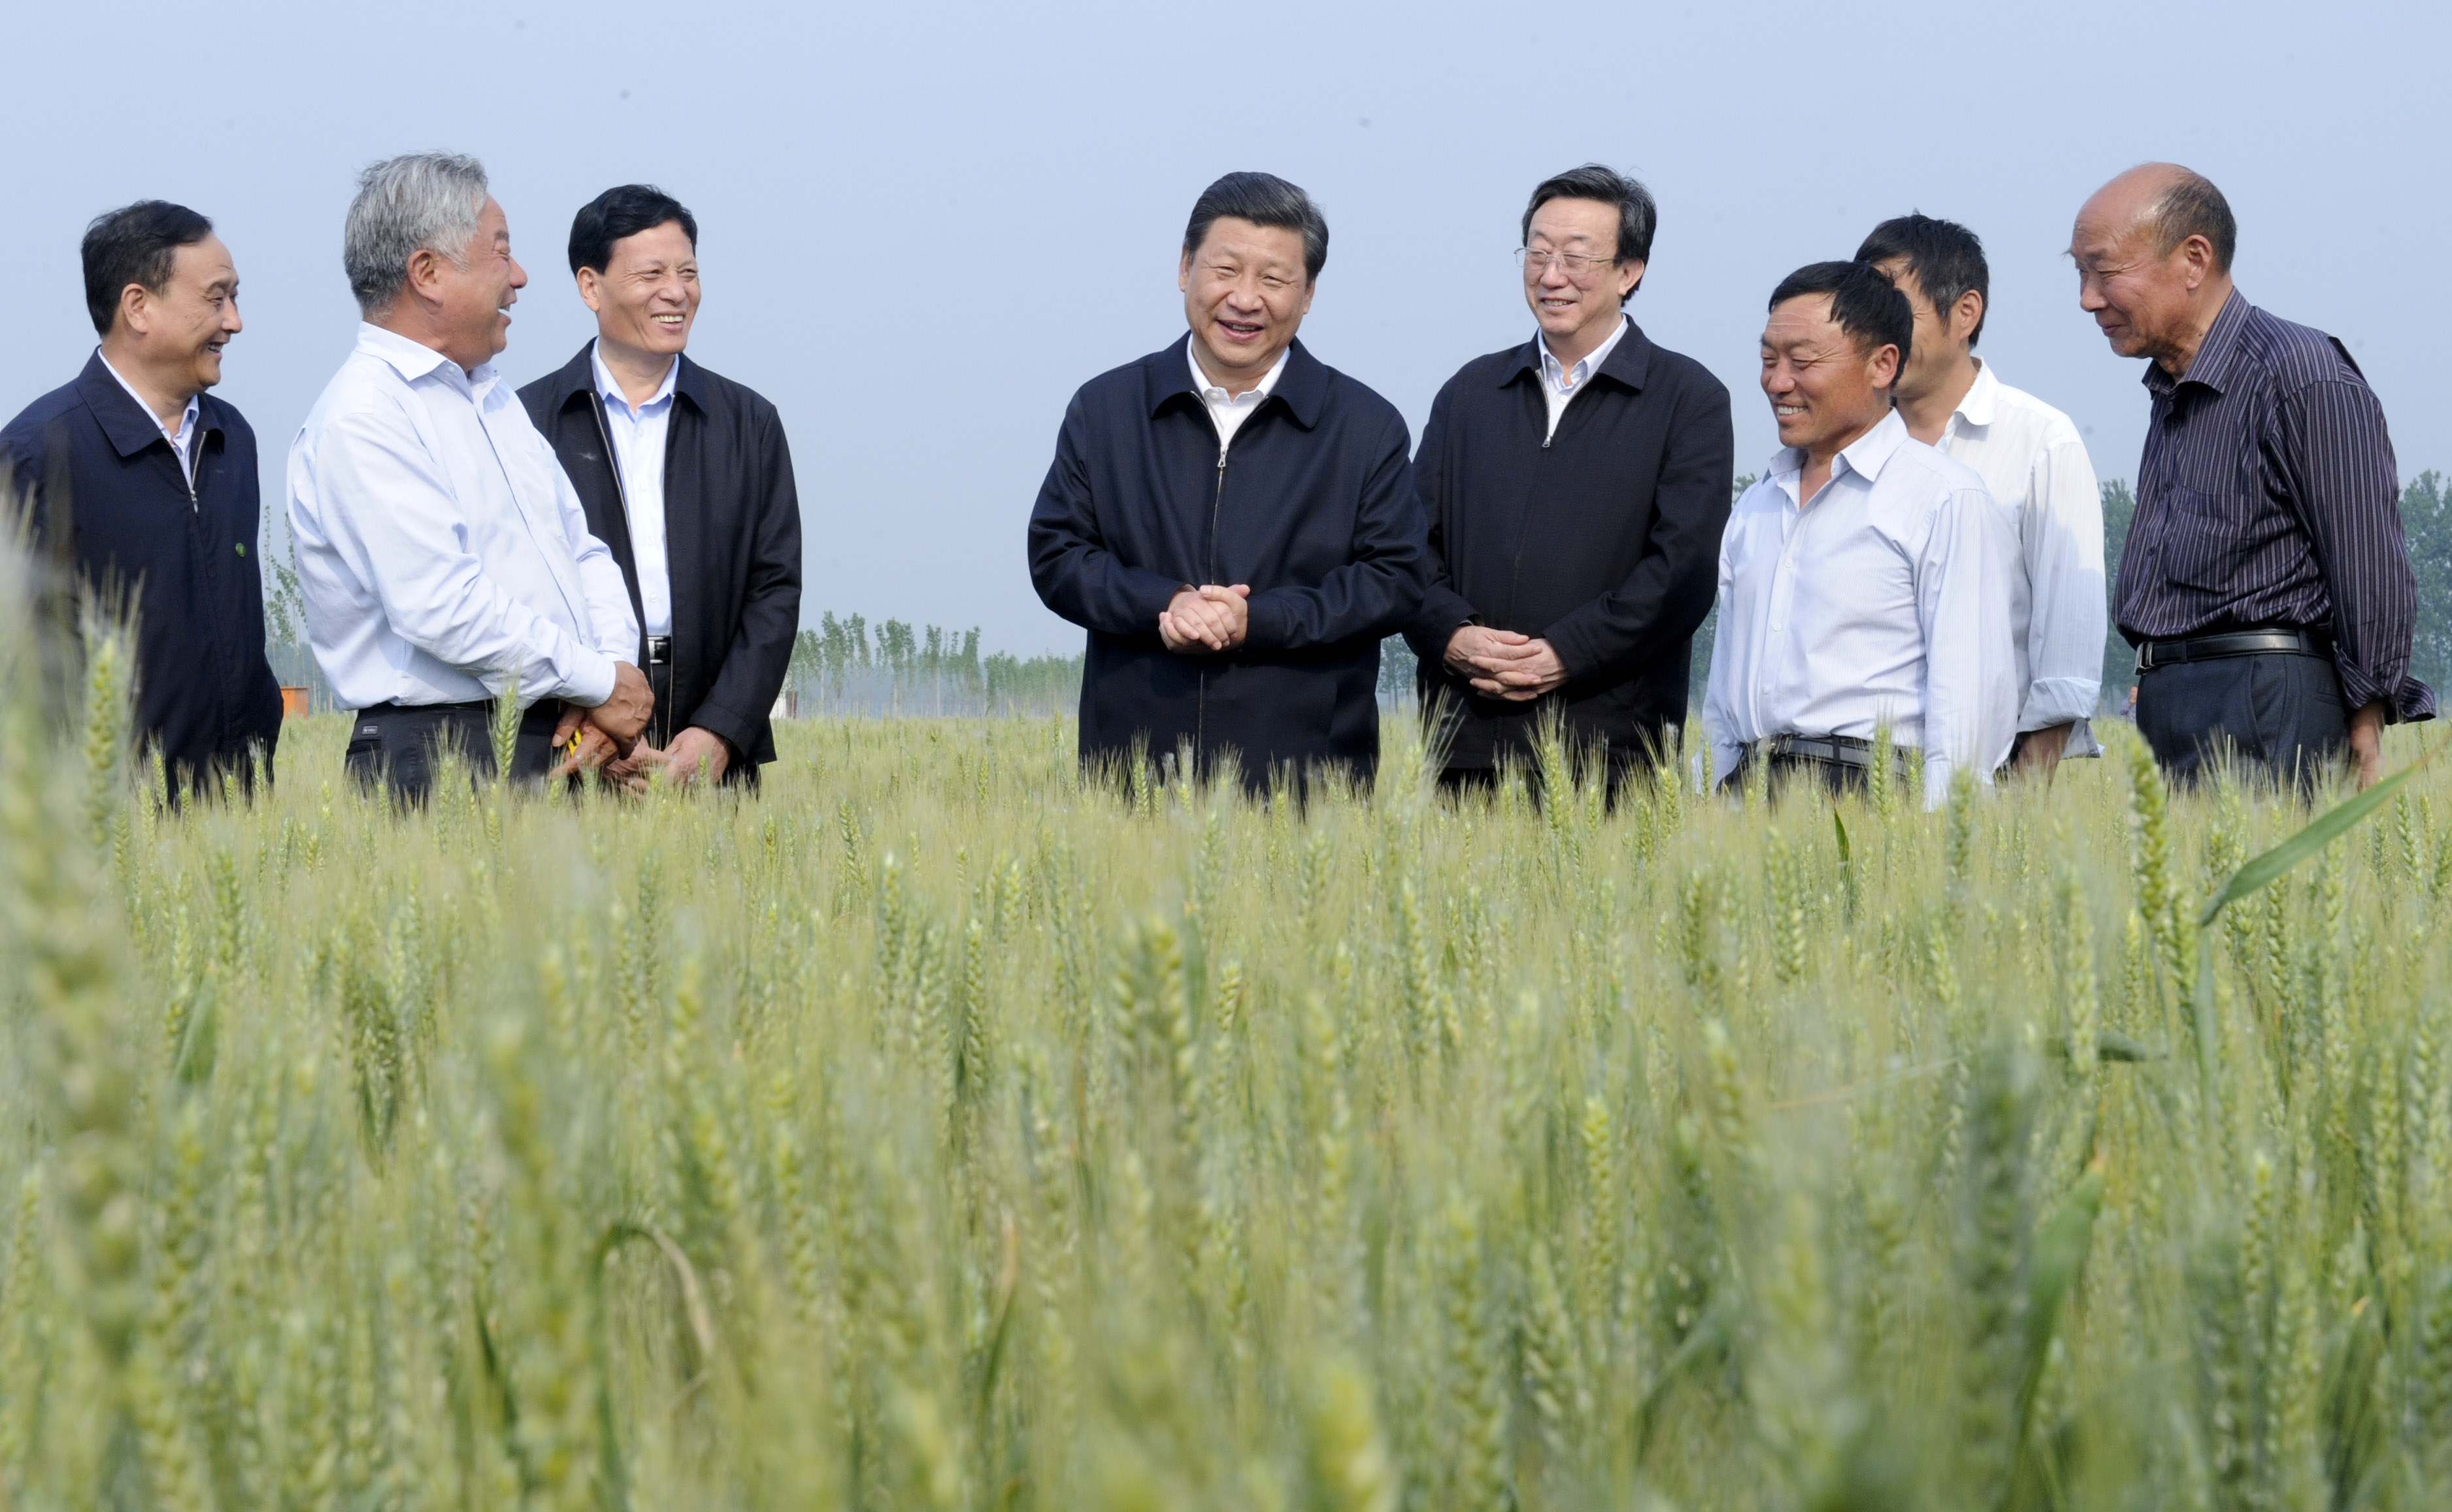 2014年5月9日，习近平总书记在河南尉氏县张市镇高标准粮田察看小麦长势。